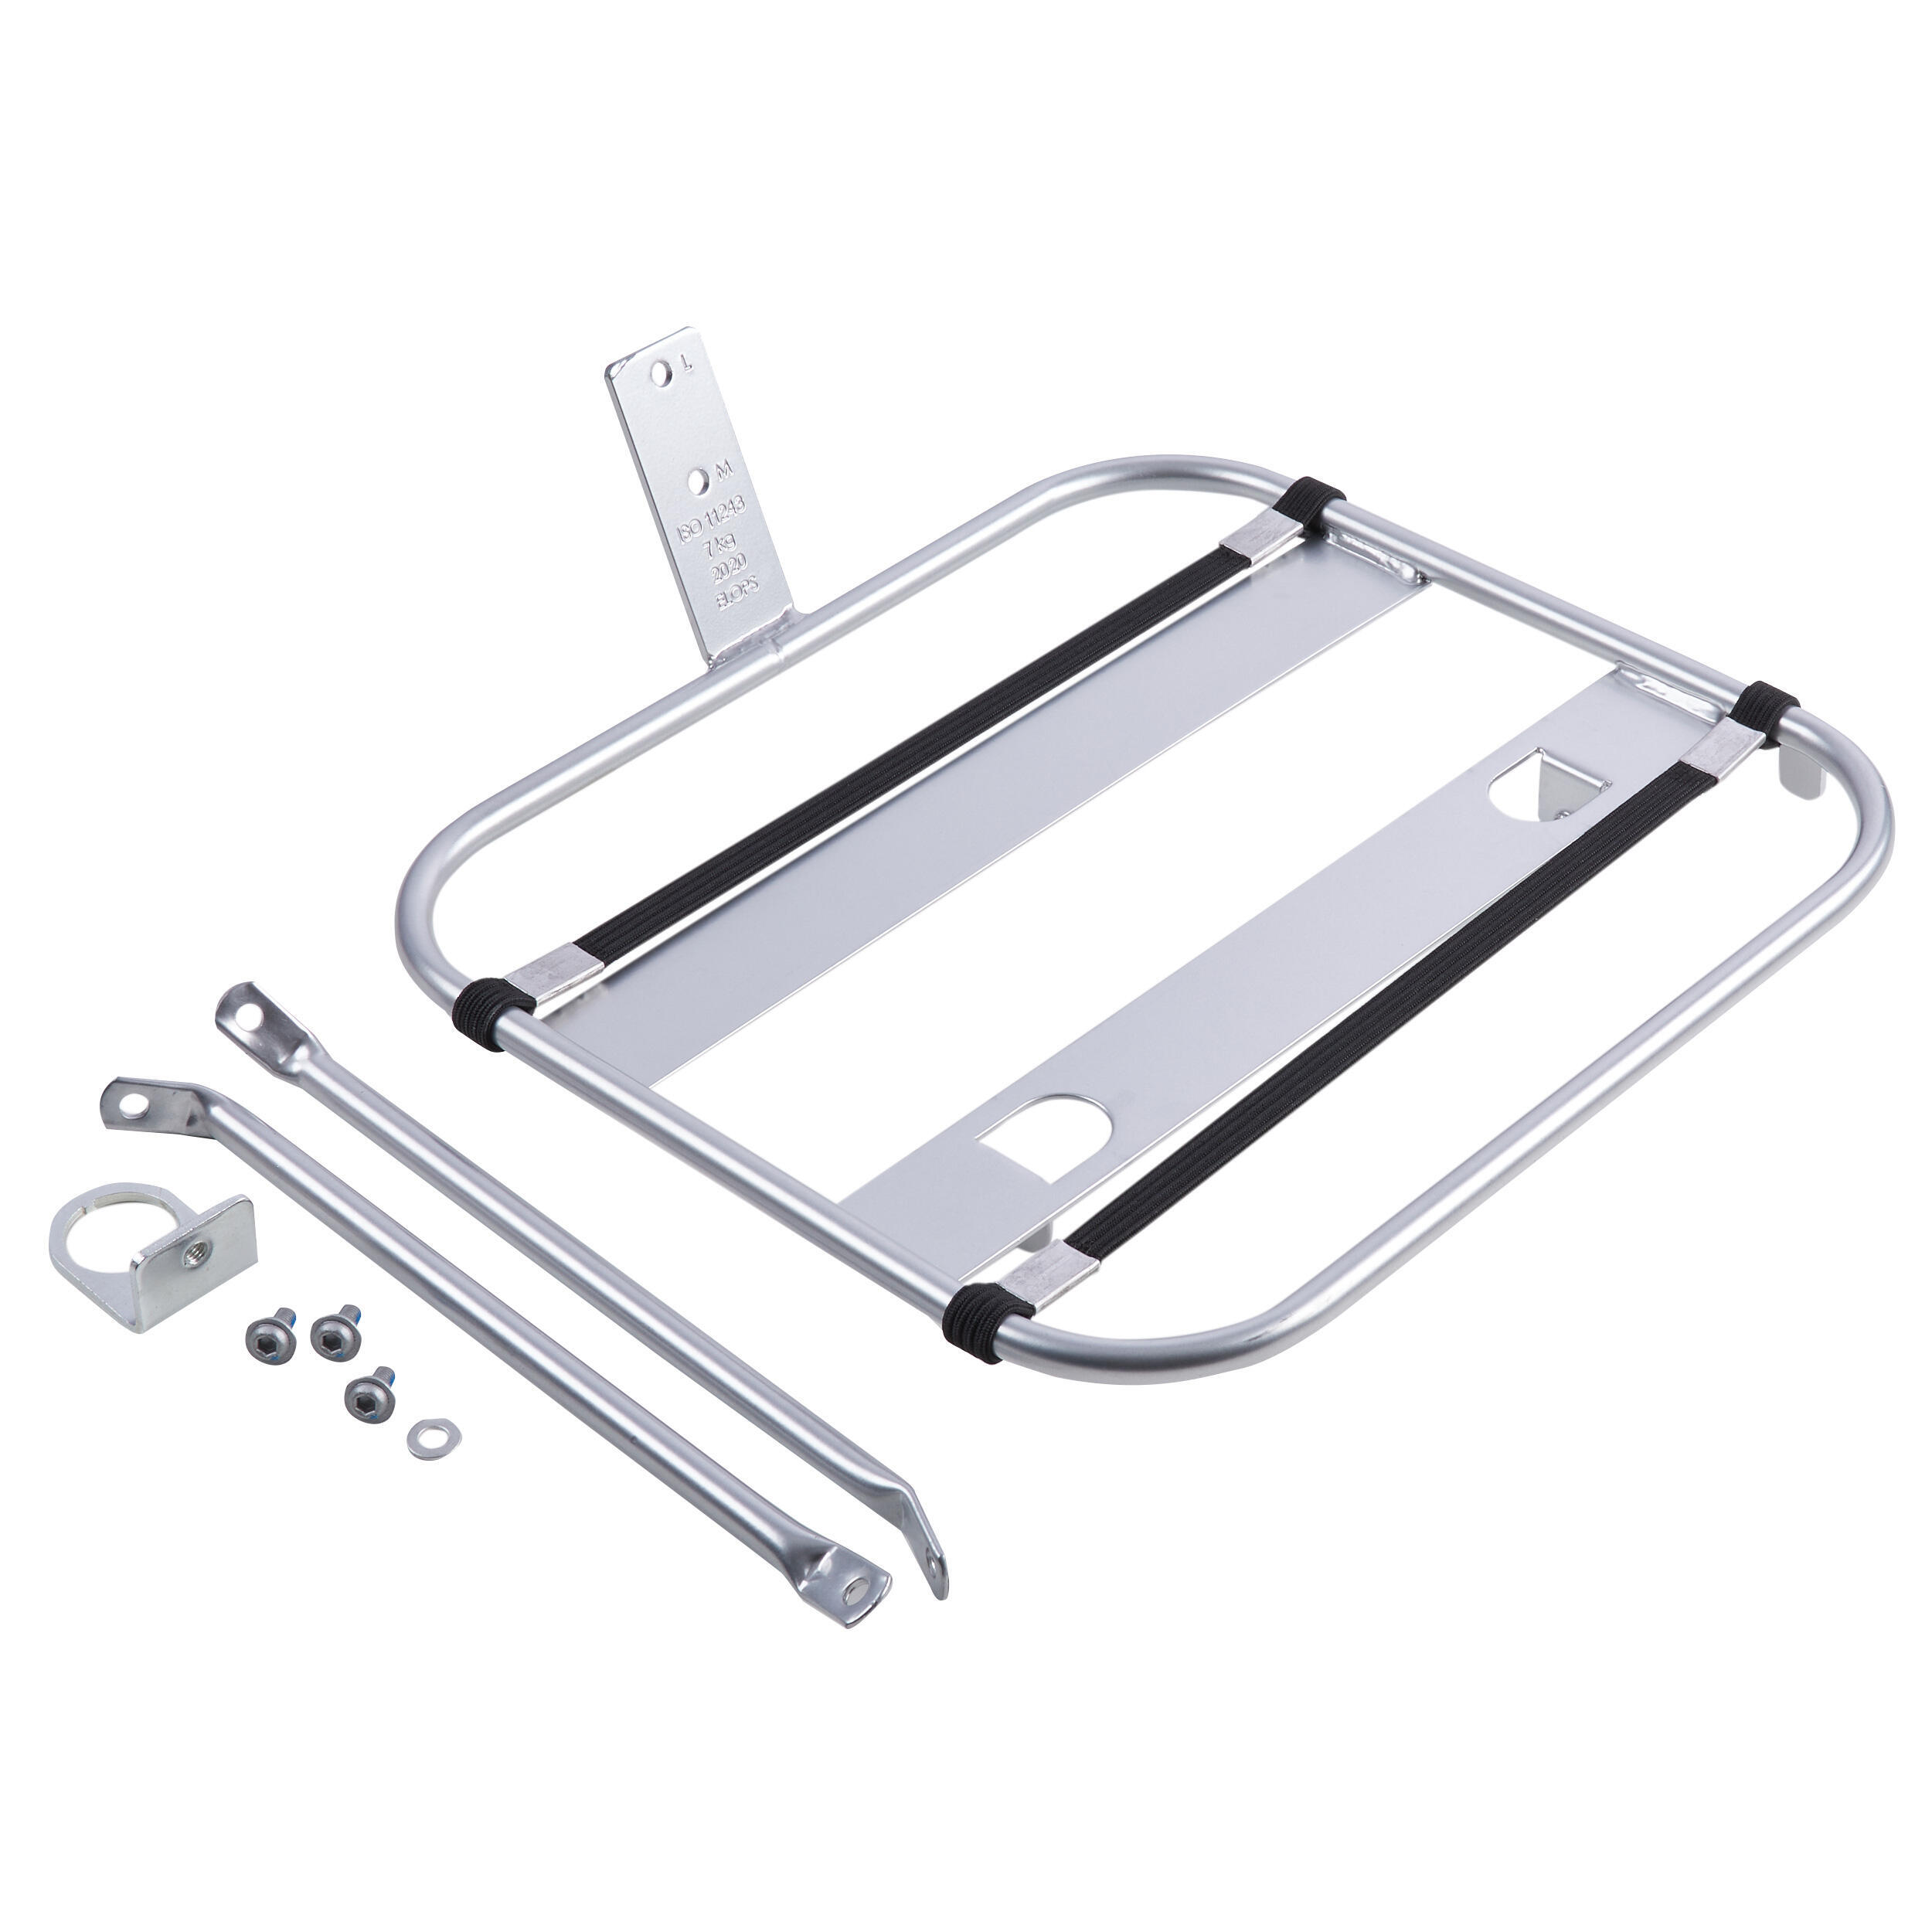 Багажник передний Elops 520 серебристый, серебро цена и фото